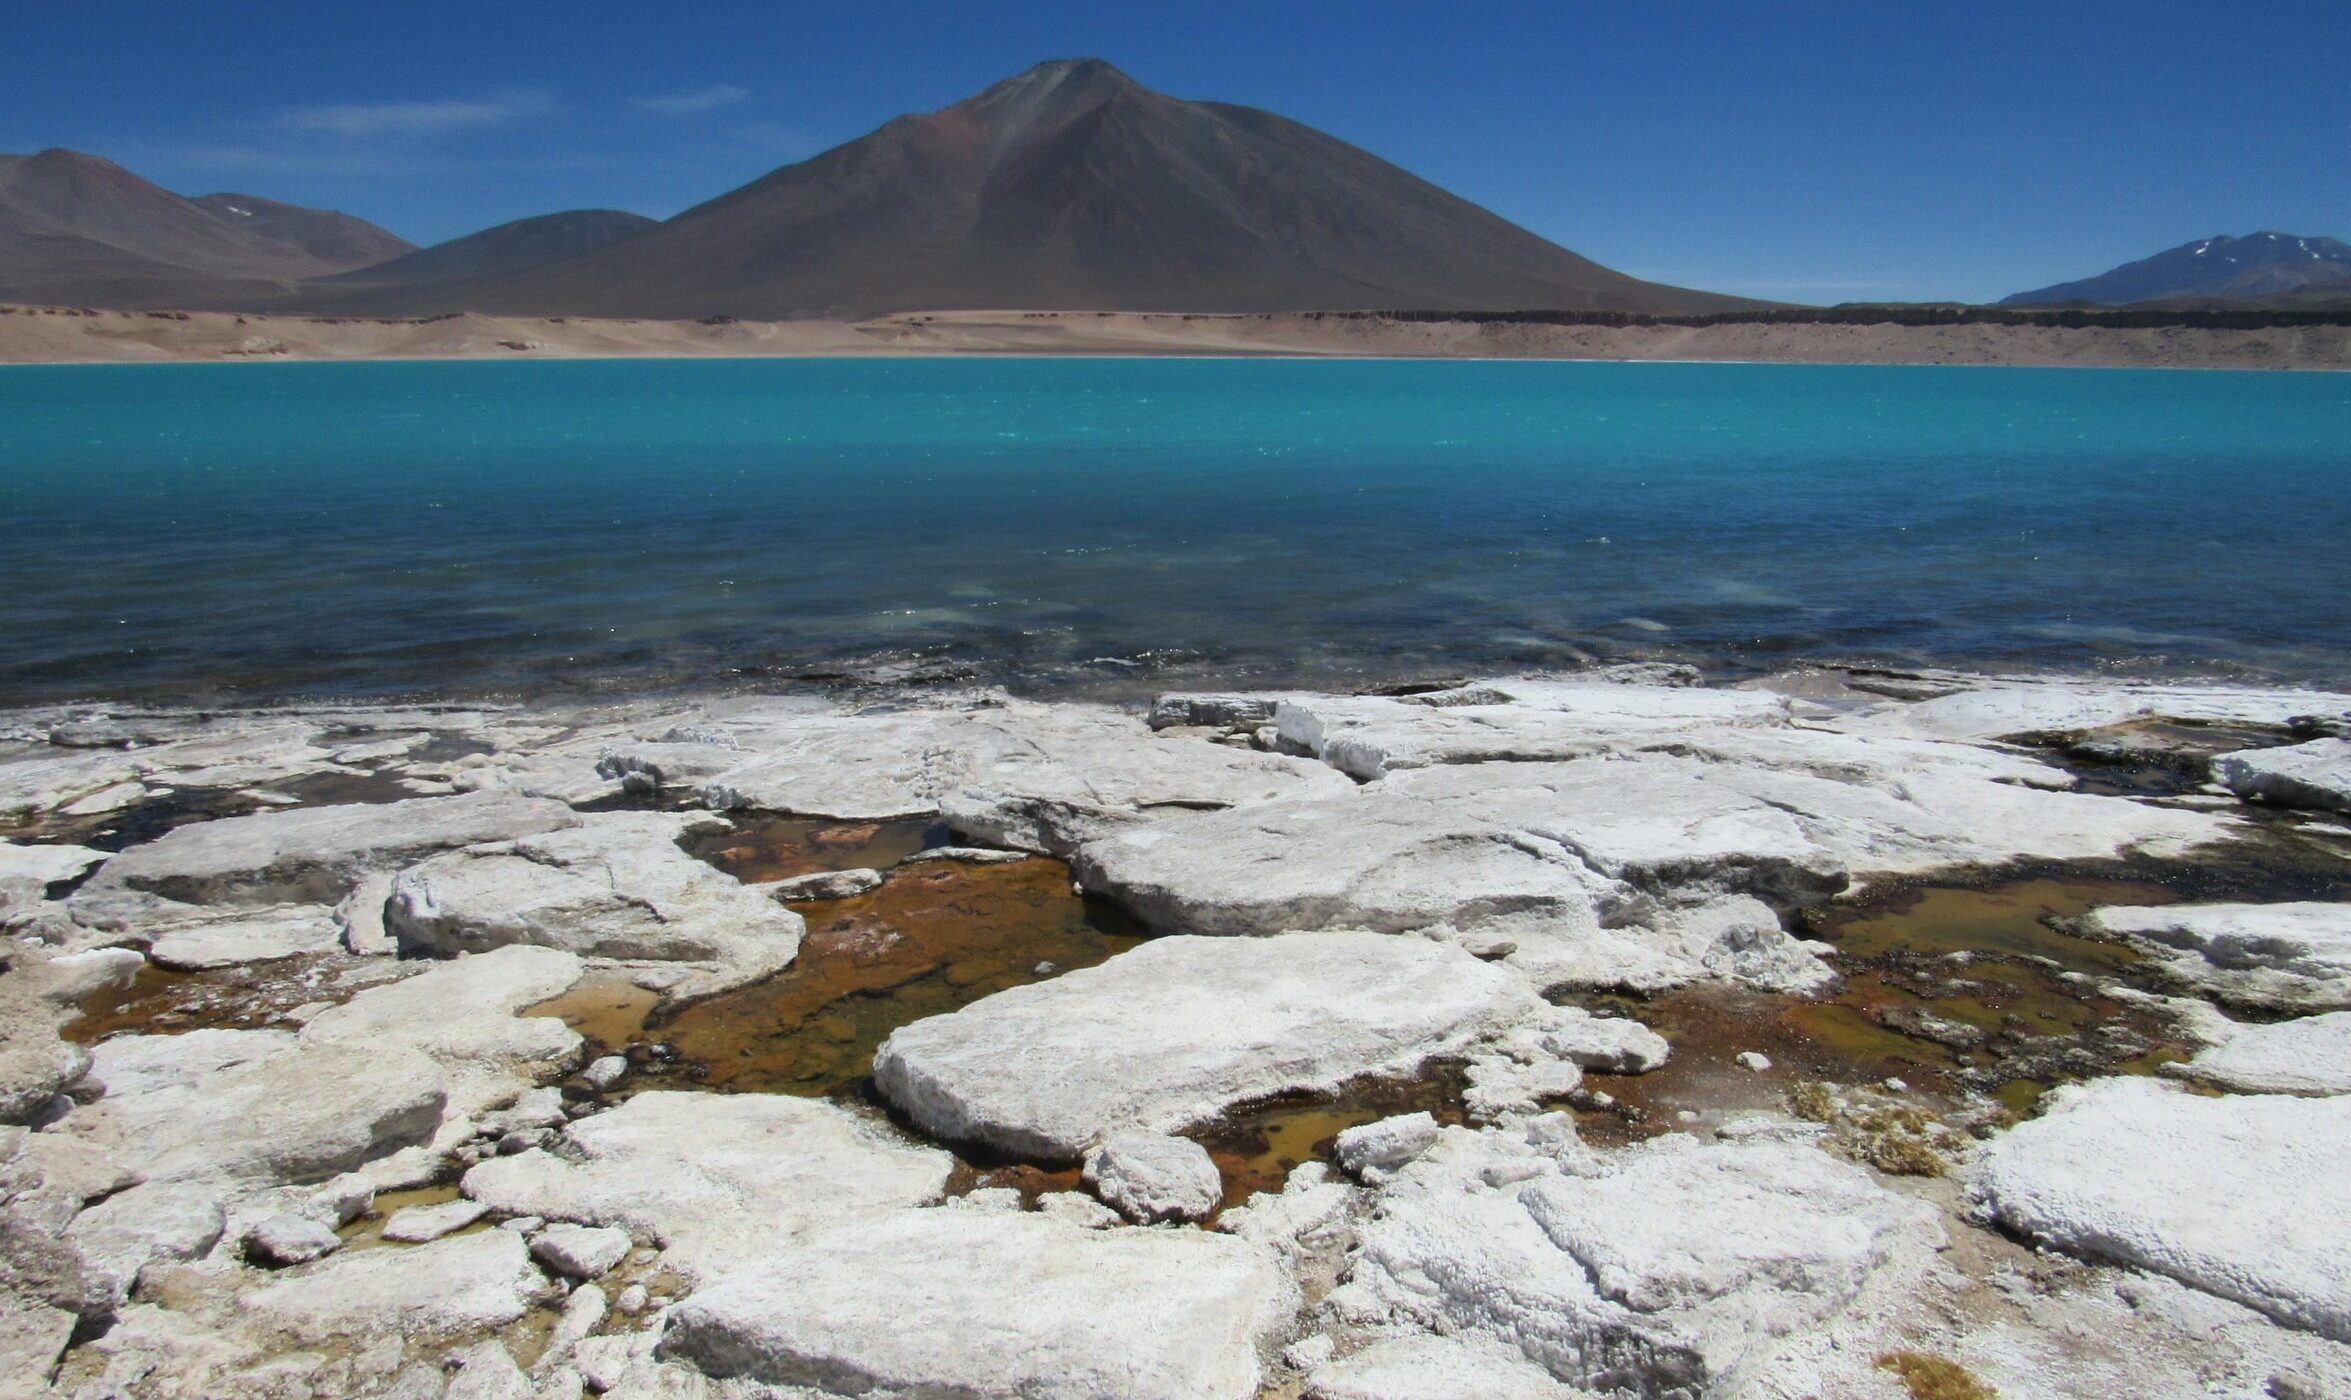 ¿Conoces las lagunas cordilleranas de Atacama? Te compartimos nuestro recorrido por sus colores y formas